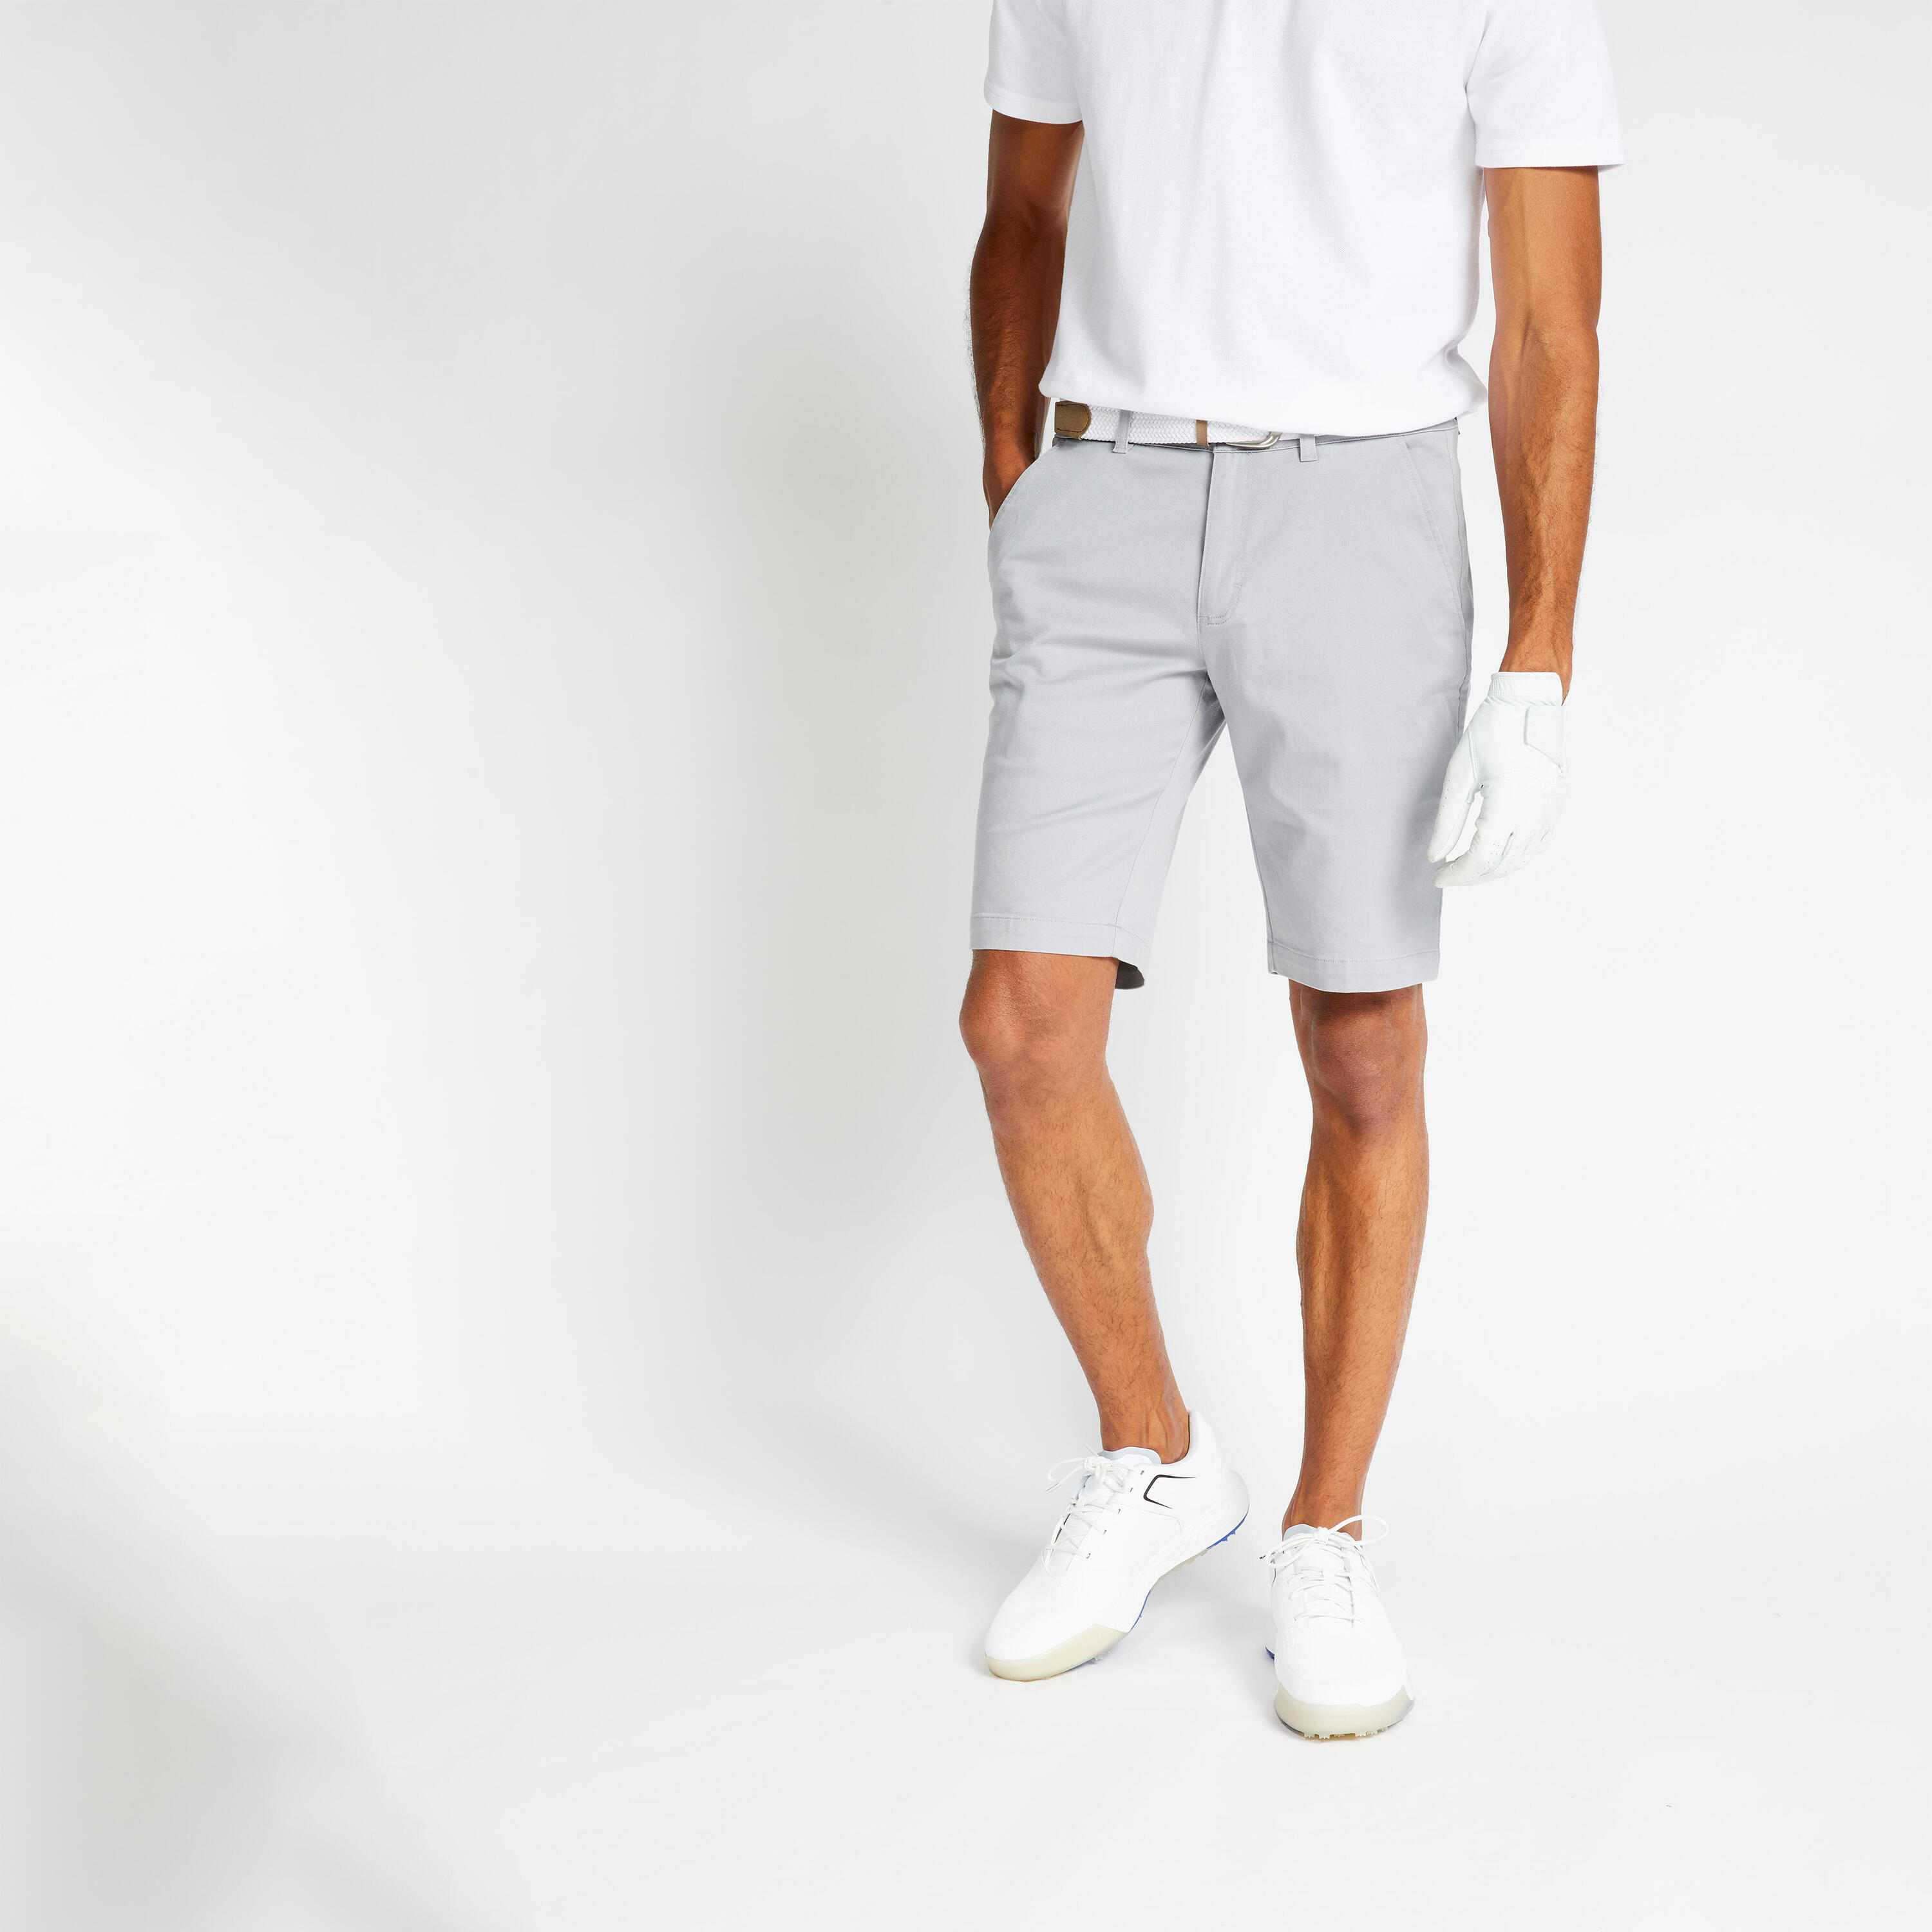 INESIS Men's golf chino shorts - MW500 grey